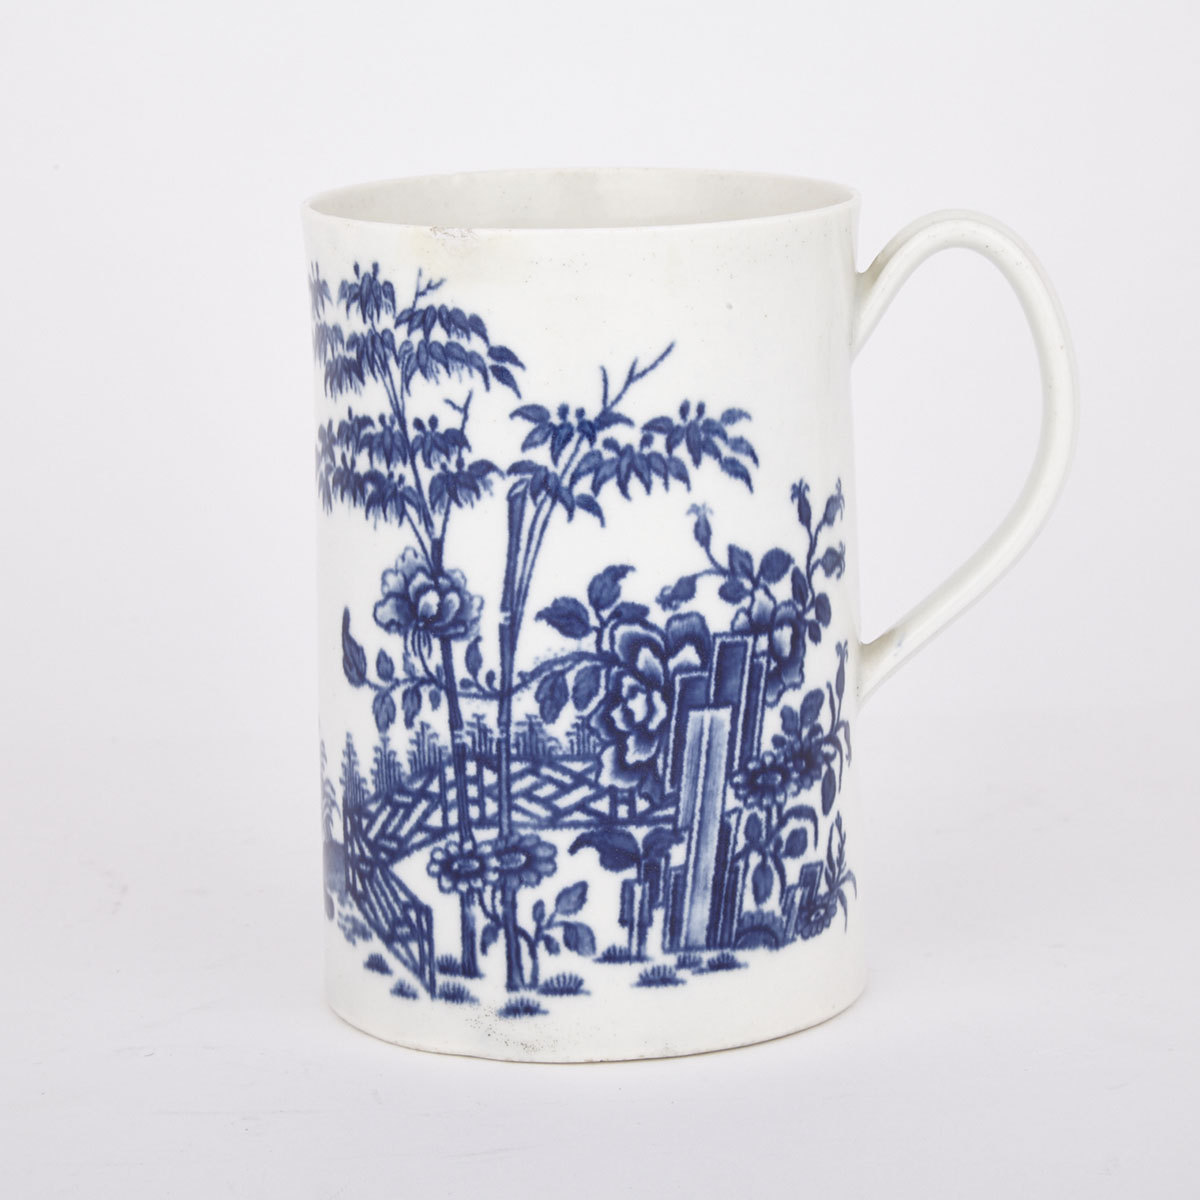 Worcester ‘Plantation’ Large Mug, c.1760-70